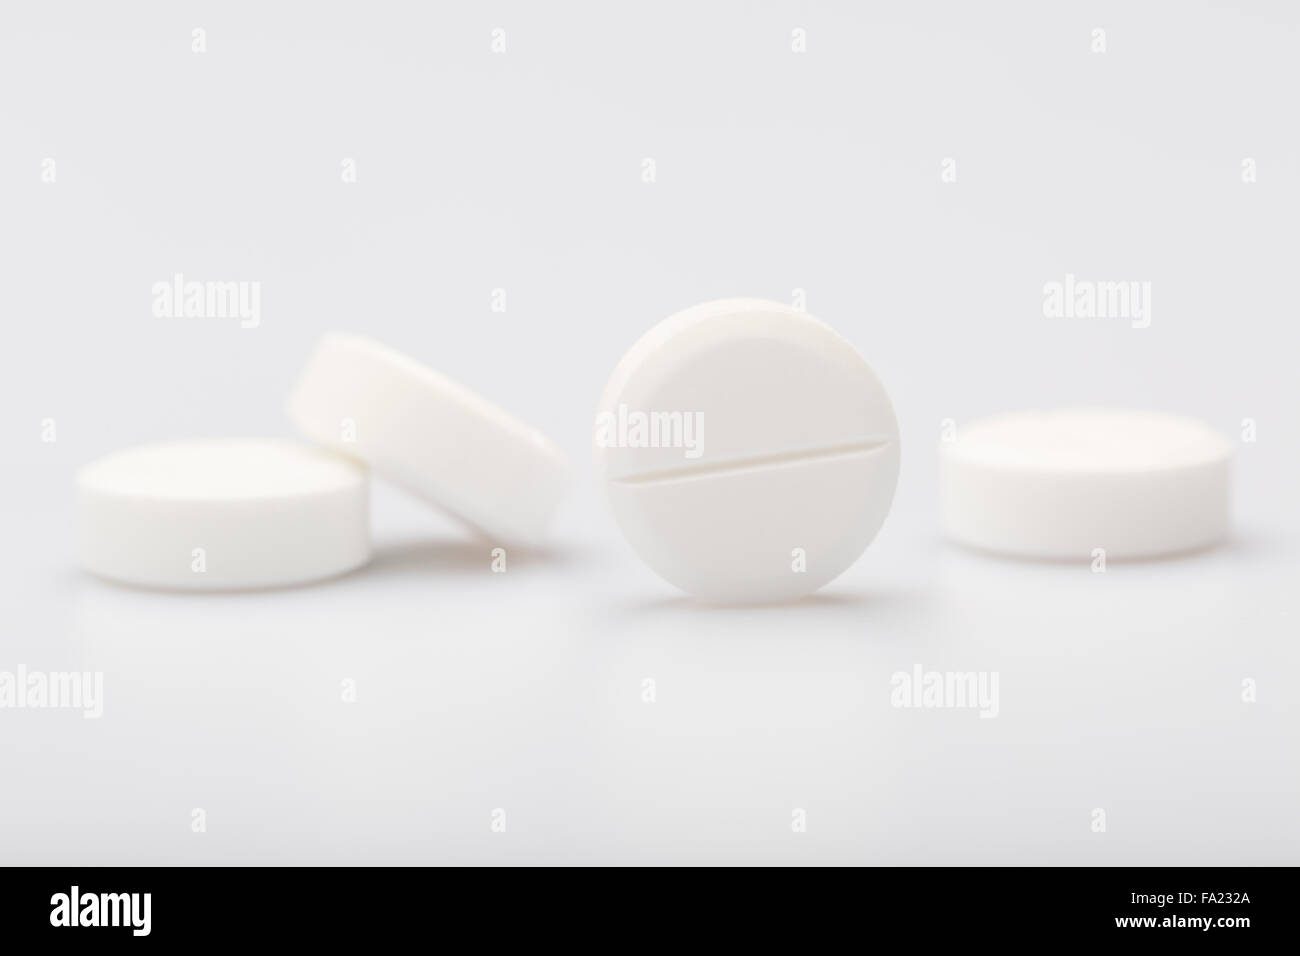 White pills on a white background Stock Photo